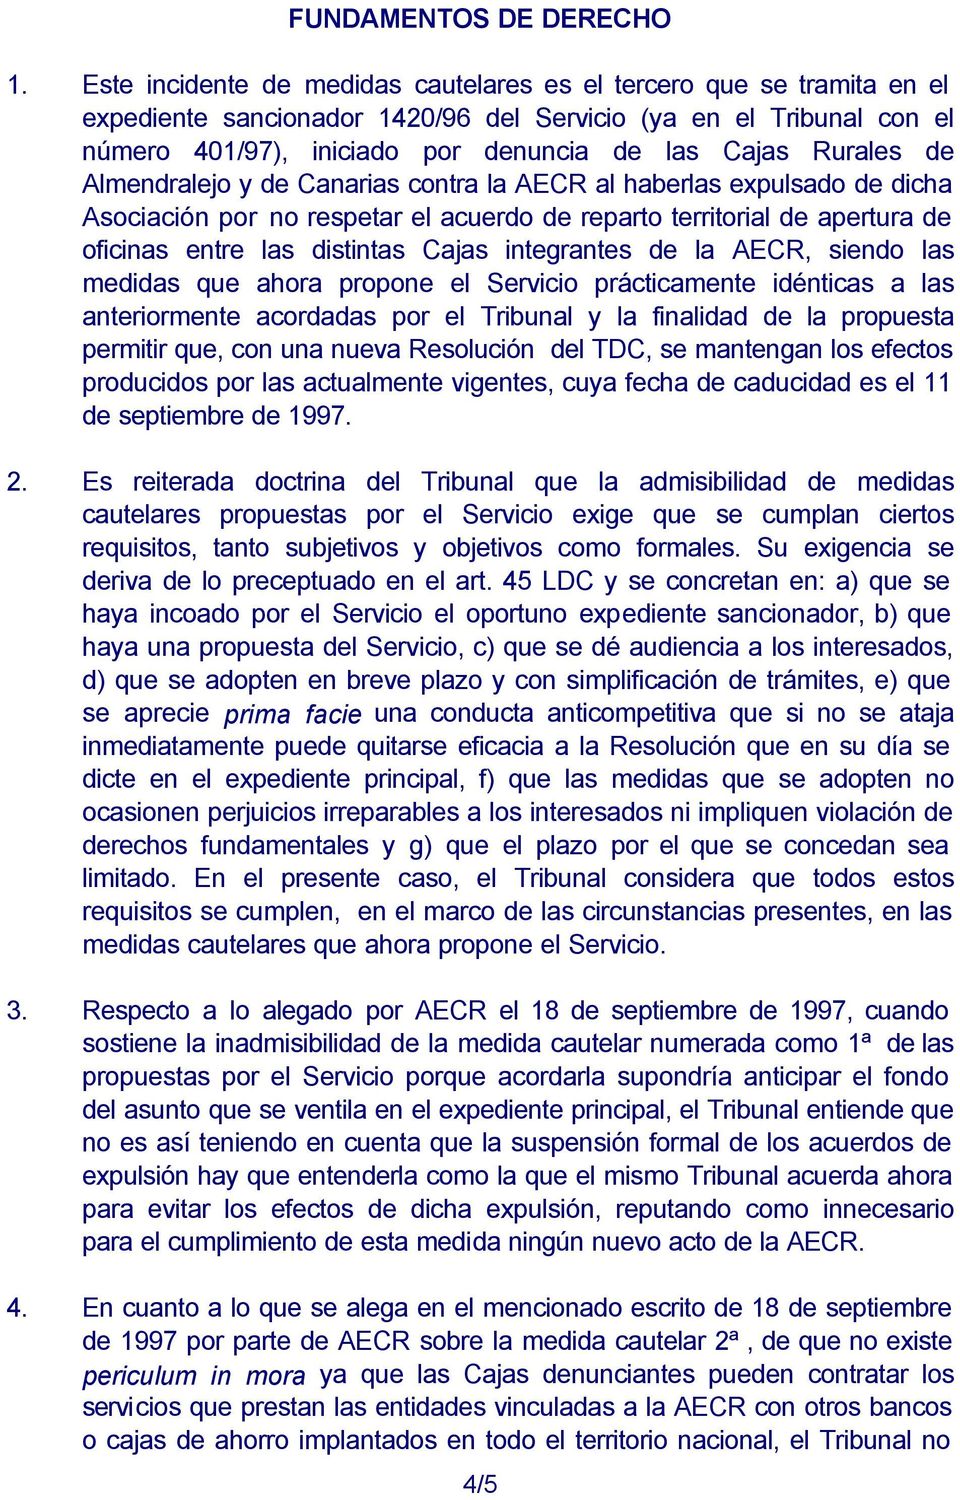 Rurales de Almendralejo y de Canarias contra la AECR al haberlas expulsado de dicha Asociación por no respetar el acuerdo de reparto territorial de apertura de oficinas entre las distintas Cajas